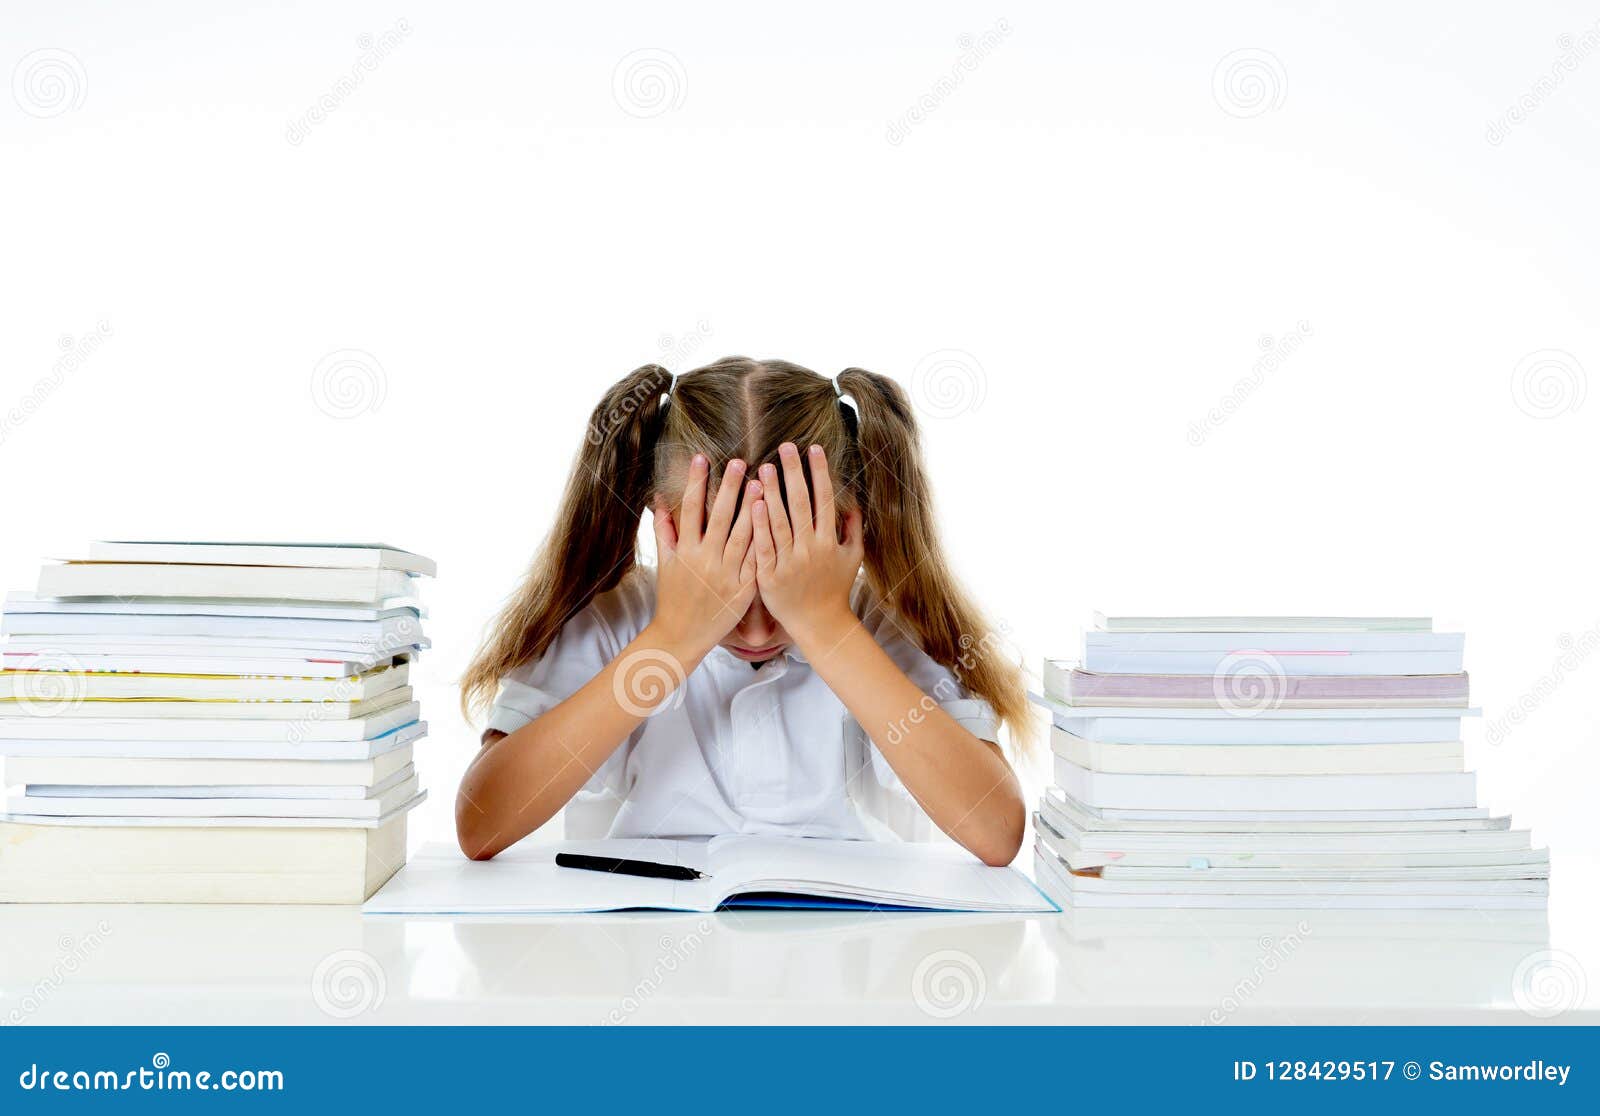 child overwhelmed by homework